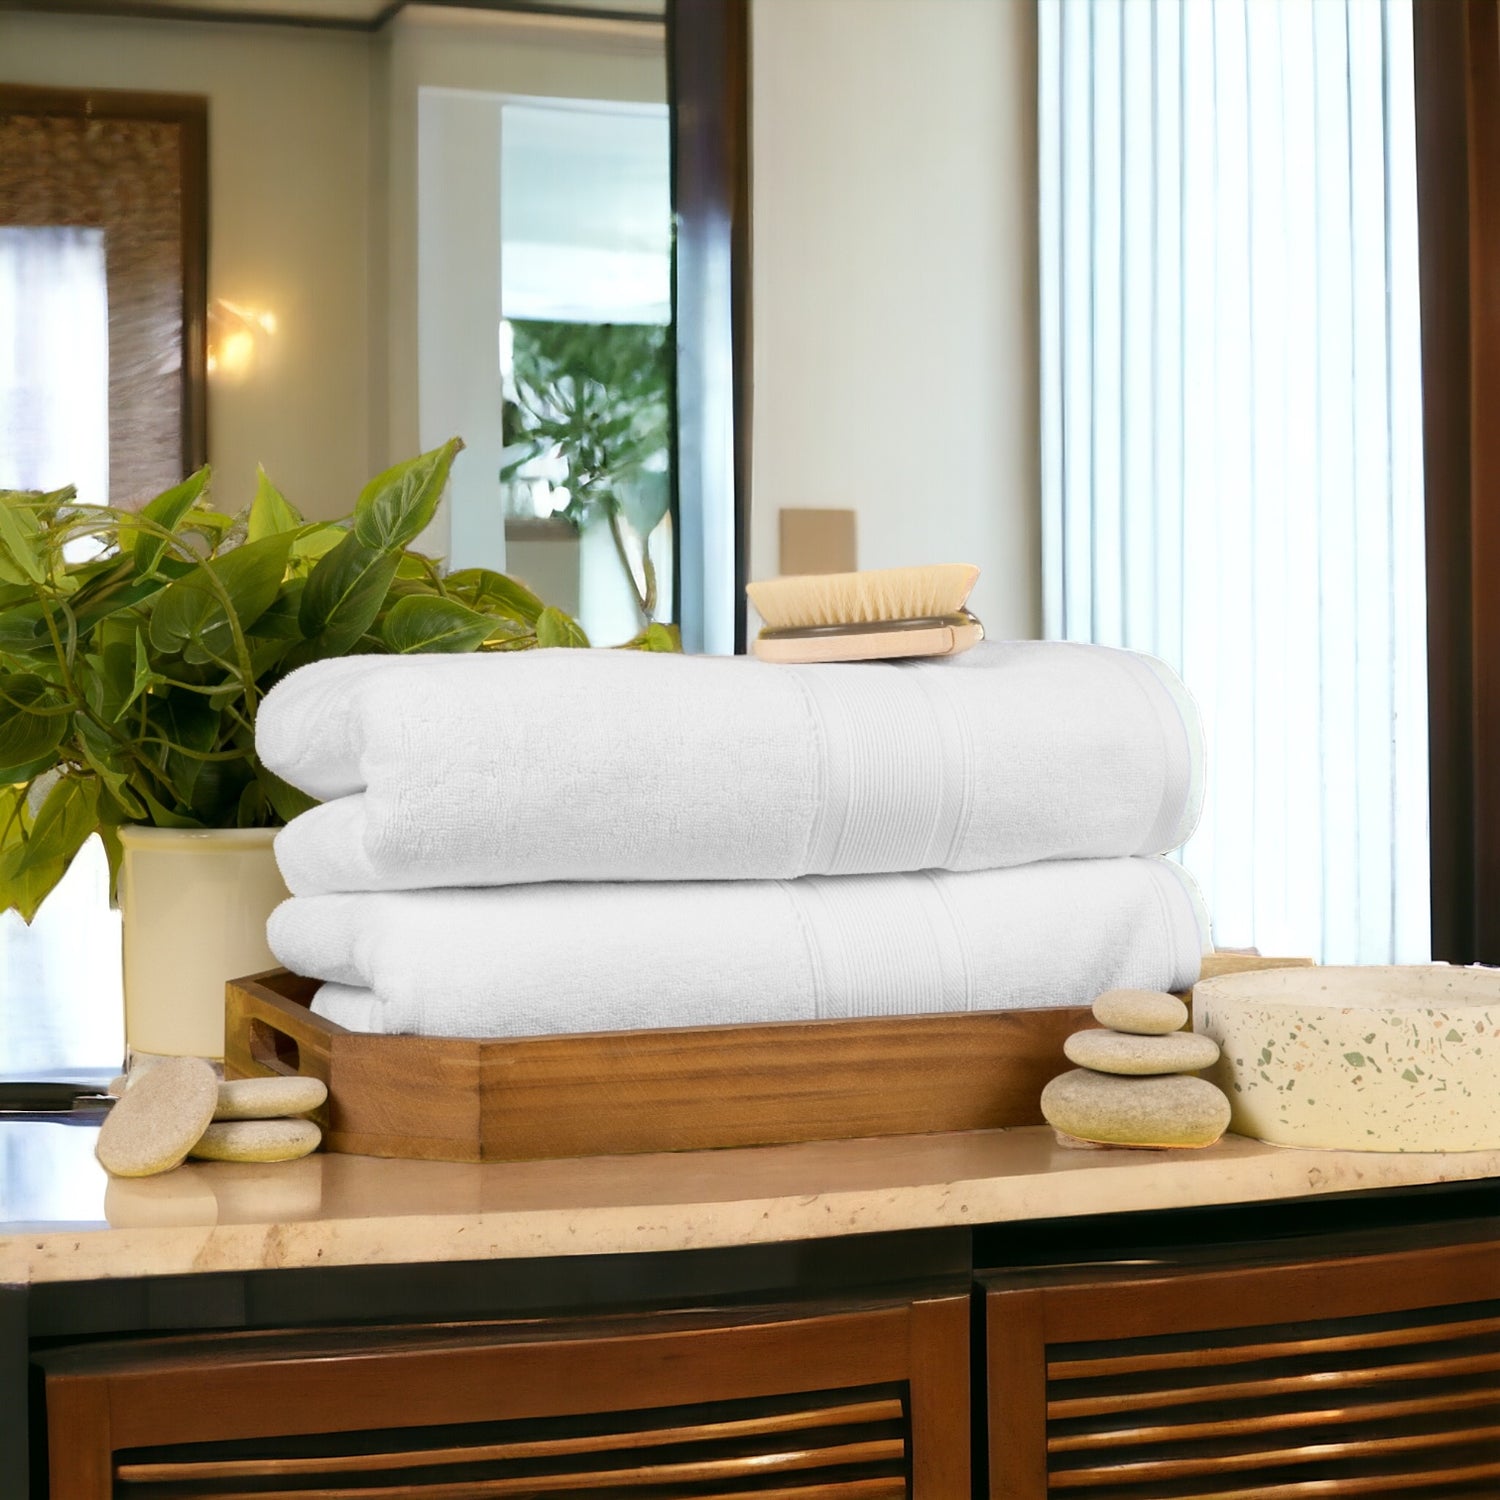 True Color Bath & Hand Towels, Wholesale Cotton Towels